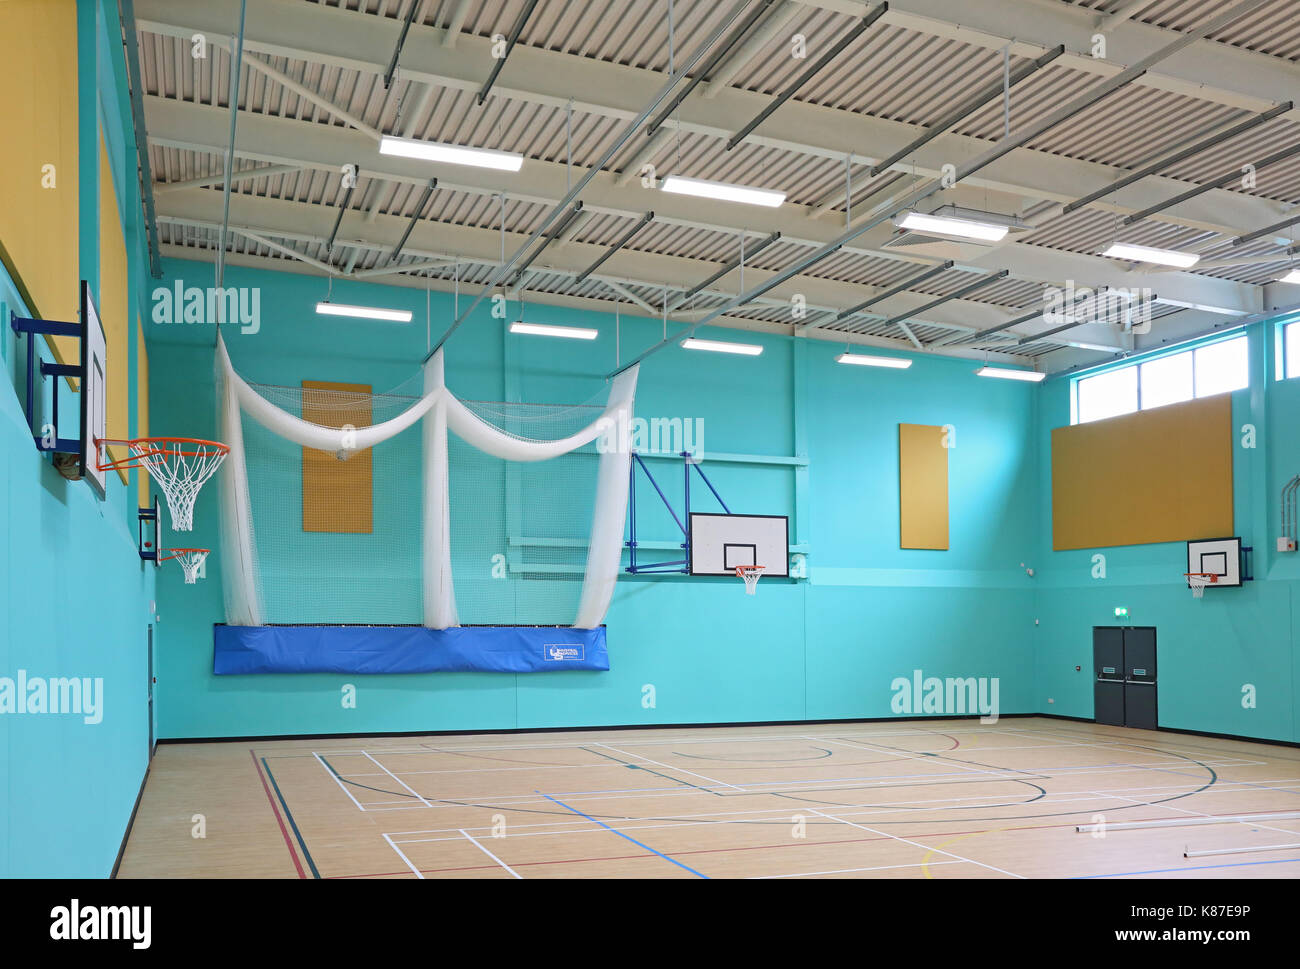 Sports Hall in un nuovo regno unito scuola secondaria. mostra basket obiettivi e reti di cricket Foto Stock